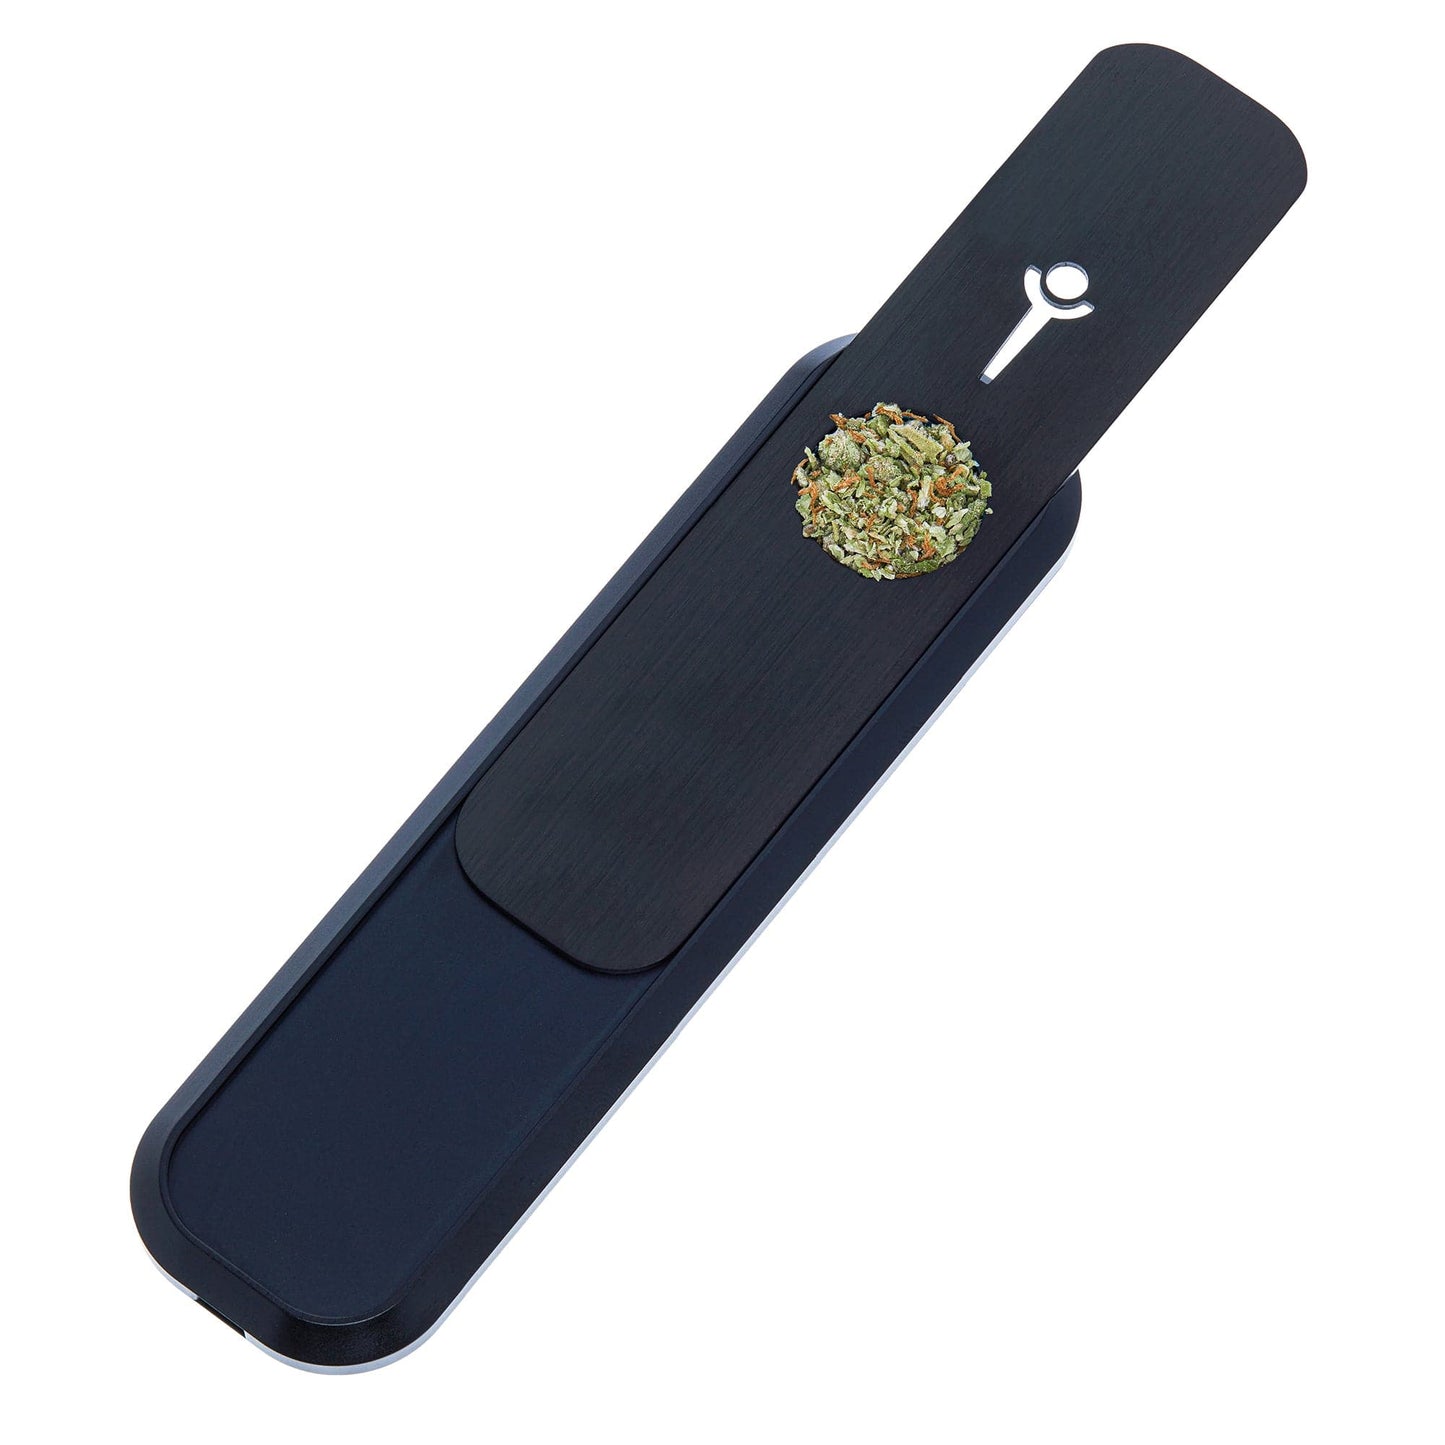 Genius Smoking Dry Herb Smoking Pipe Mini - Black Patented air cooling system